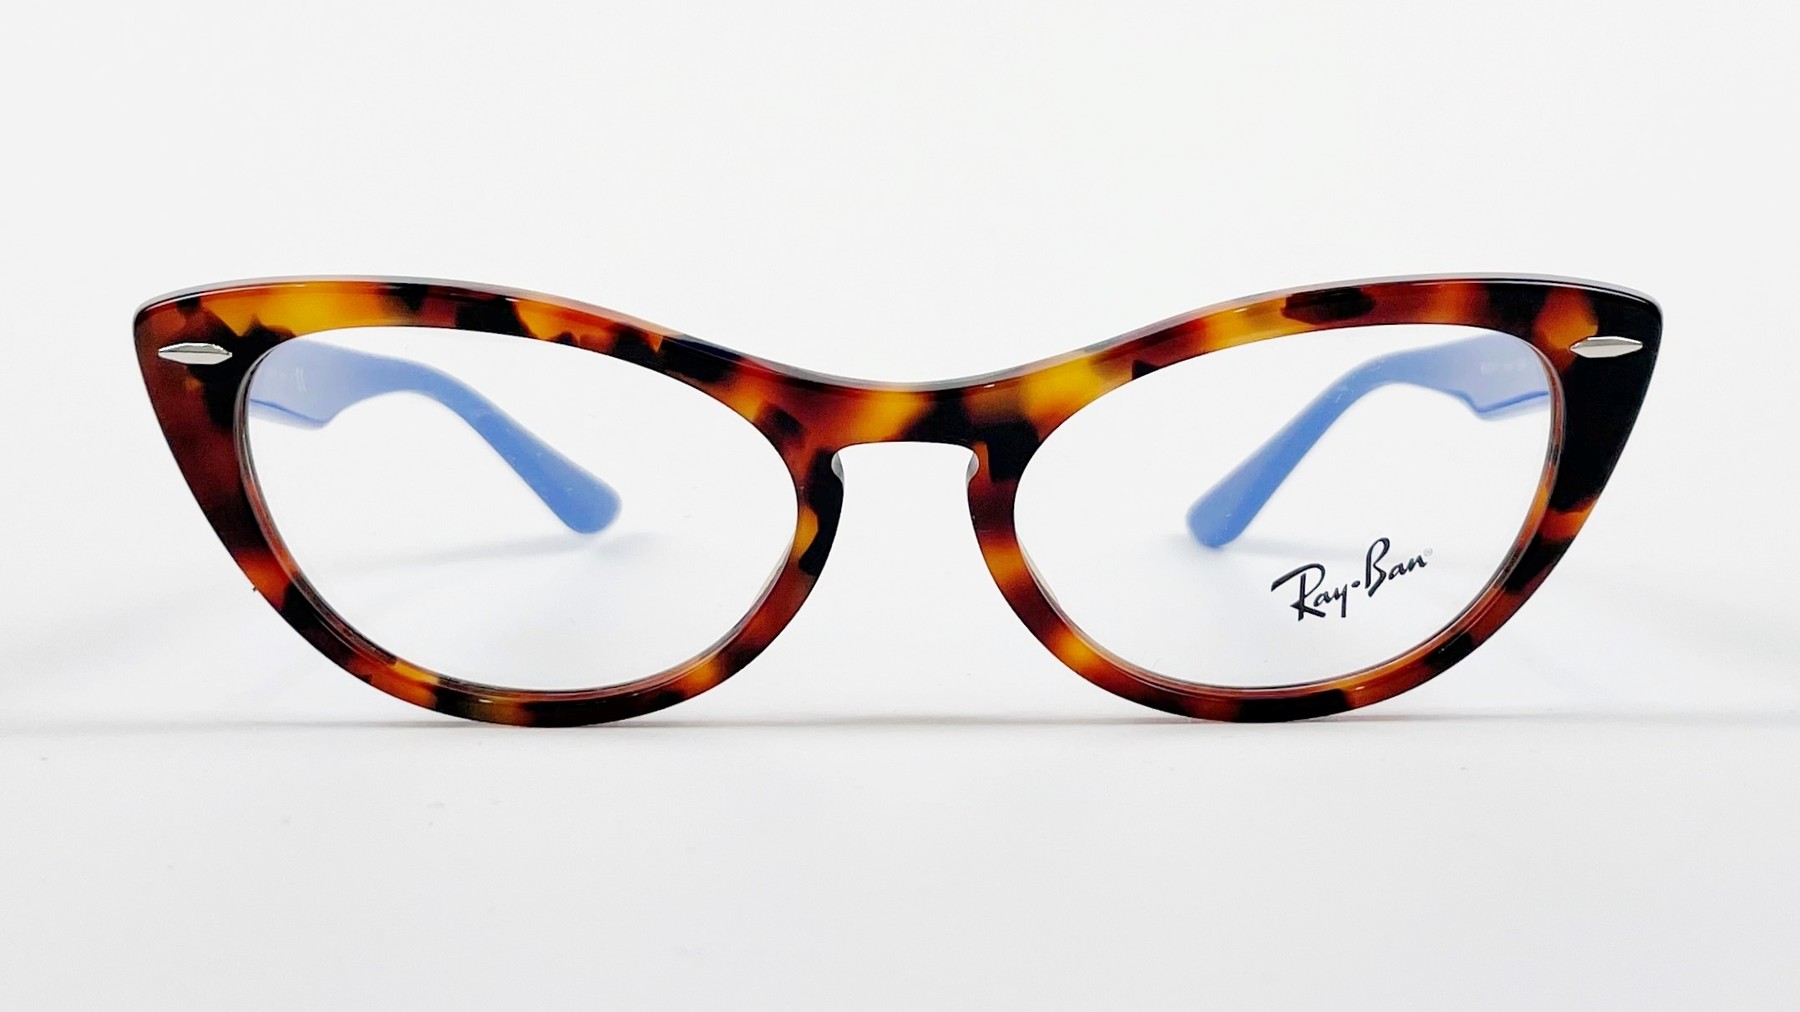 RayBan RB4314 5936, Korean glasses, sunglasses, eyeglasses, glasses